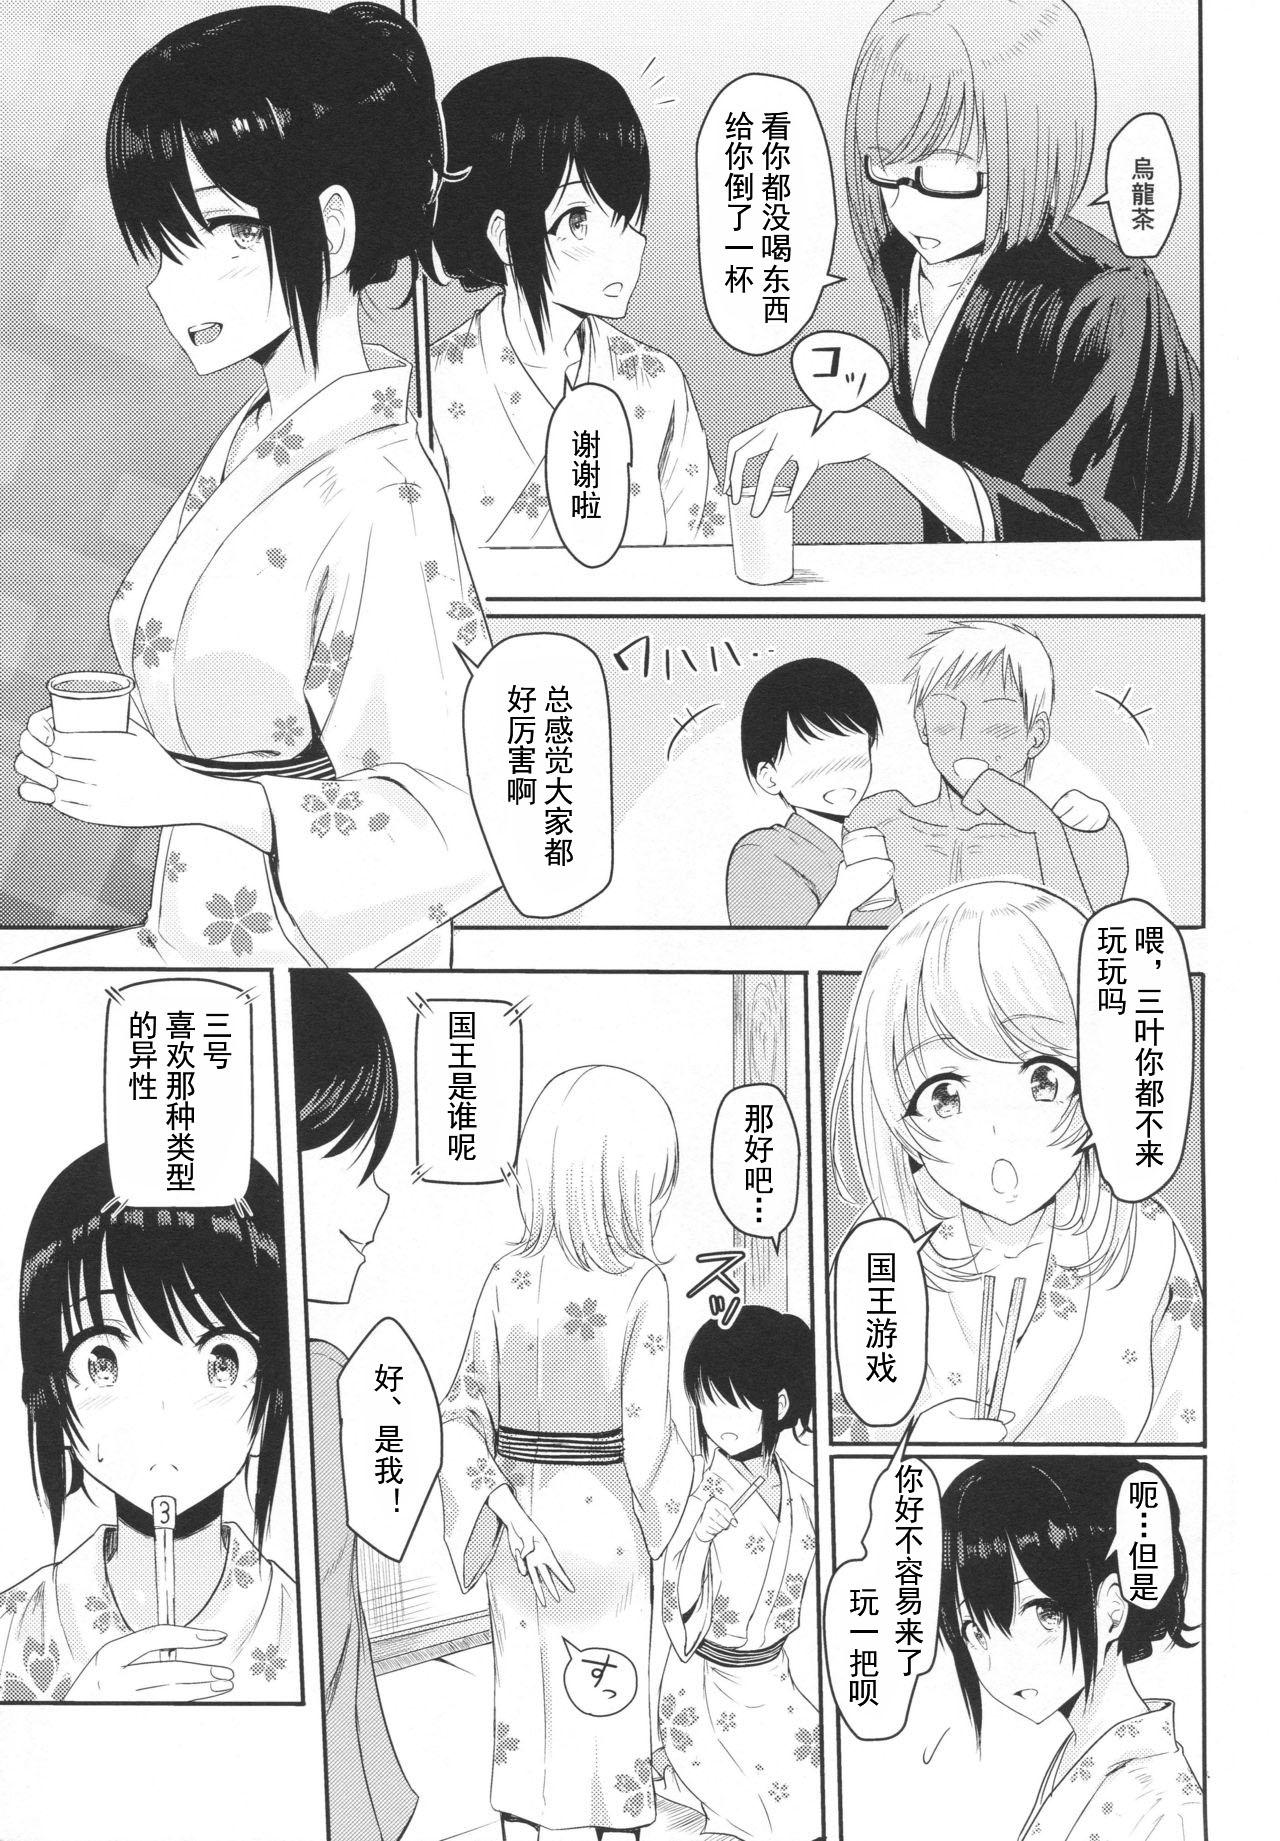 Straight Porn Mitsuha - Kimi no na wa. Amiga - Page 6